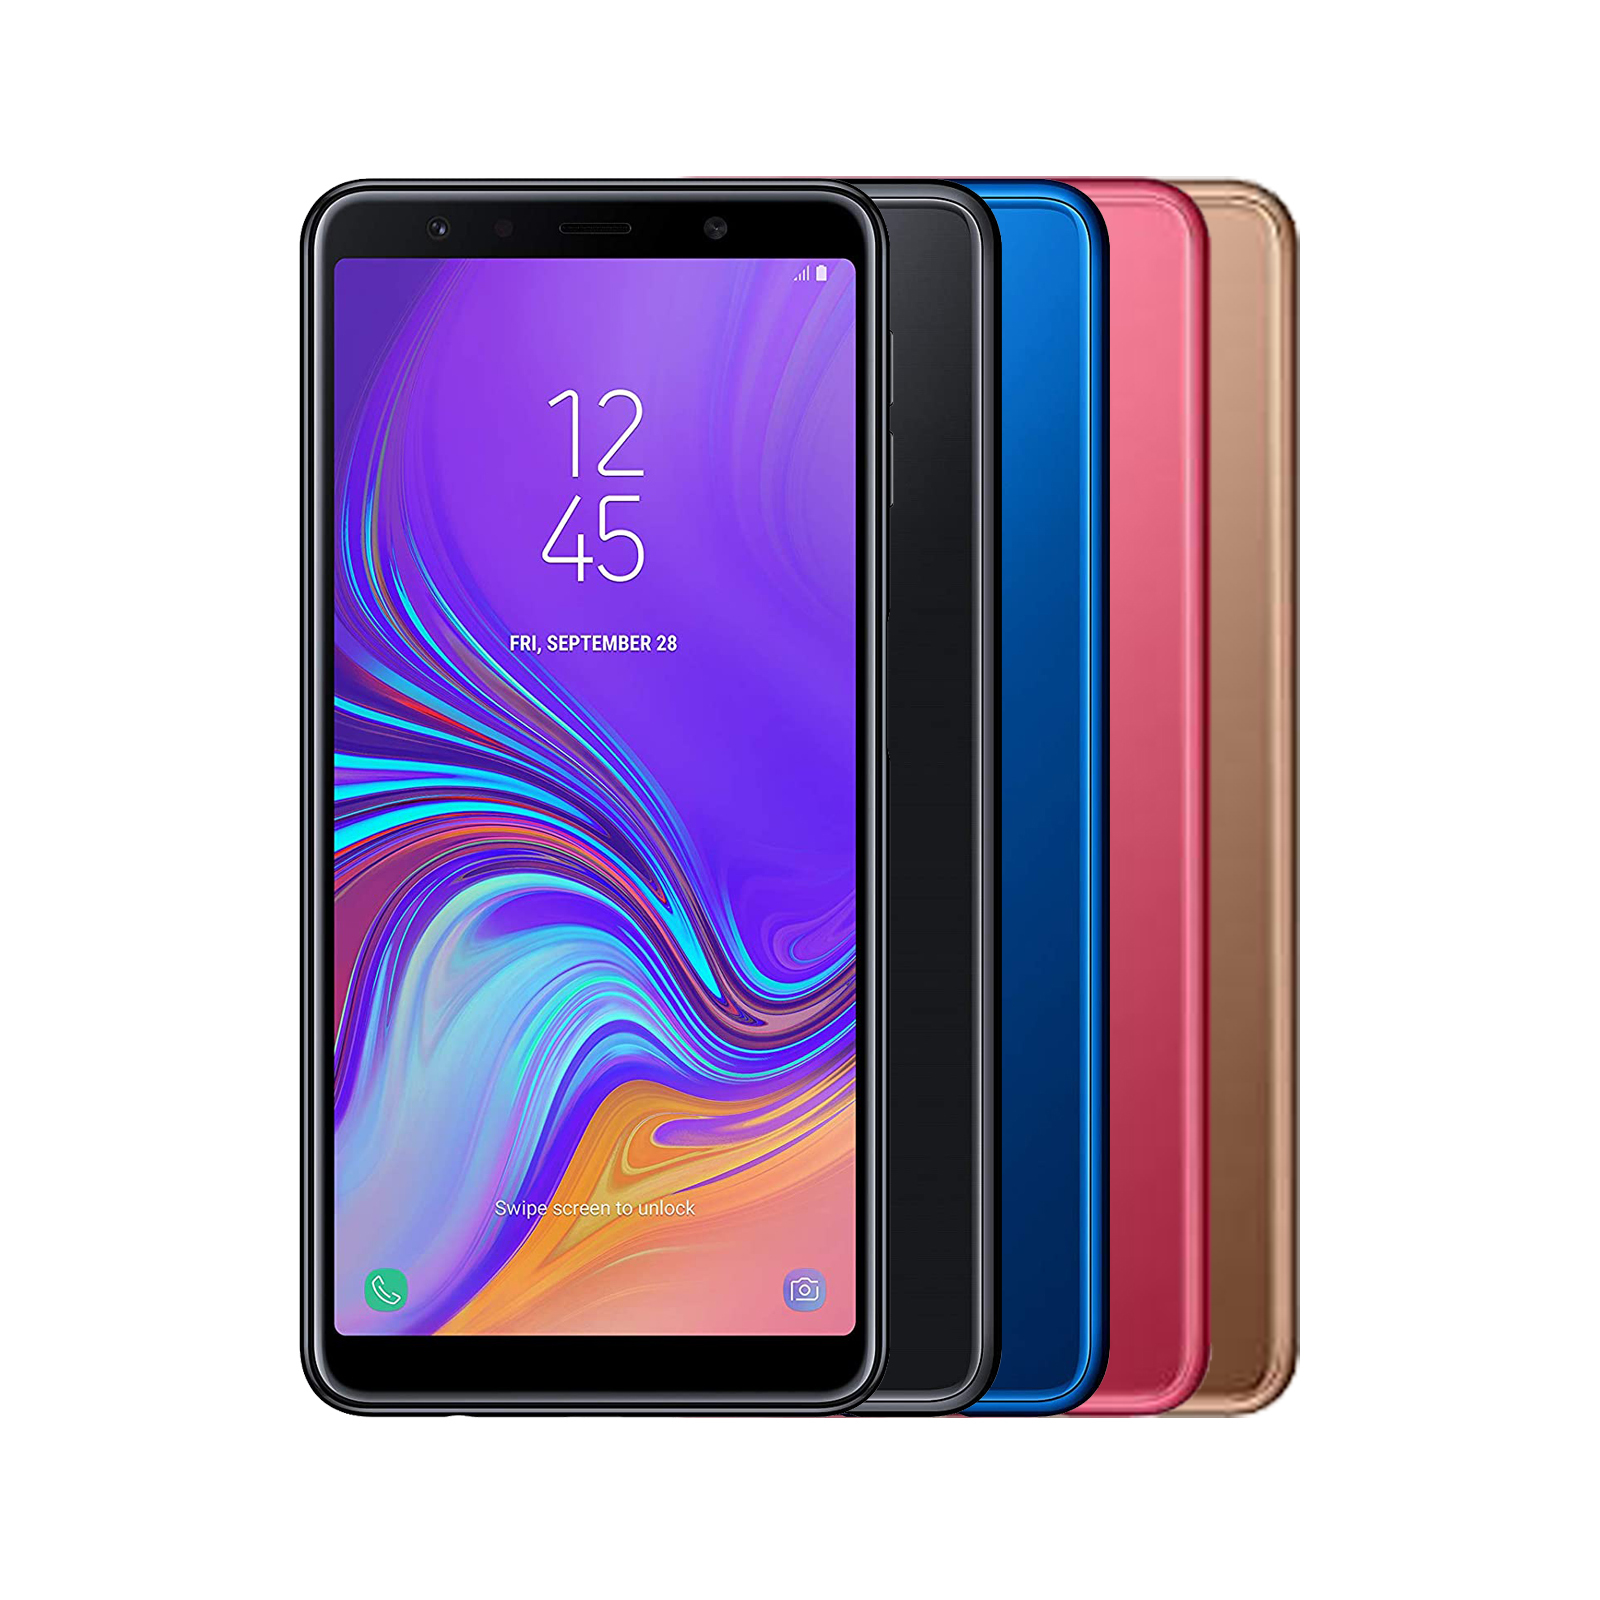 Samsung Galaxy A7 (2018) - Good